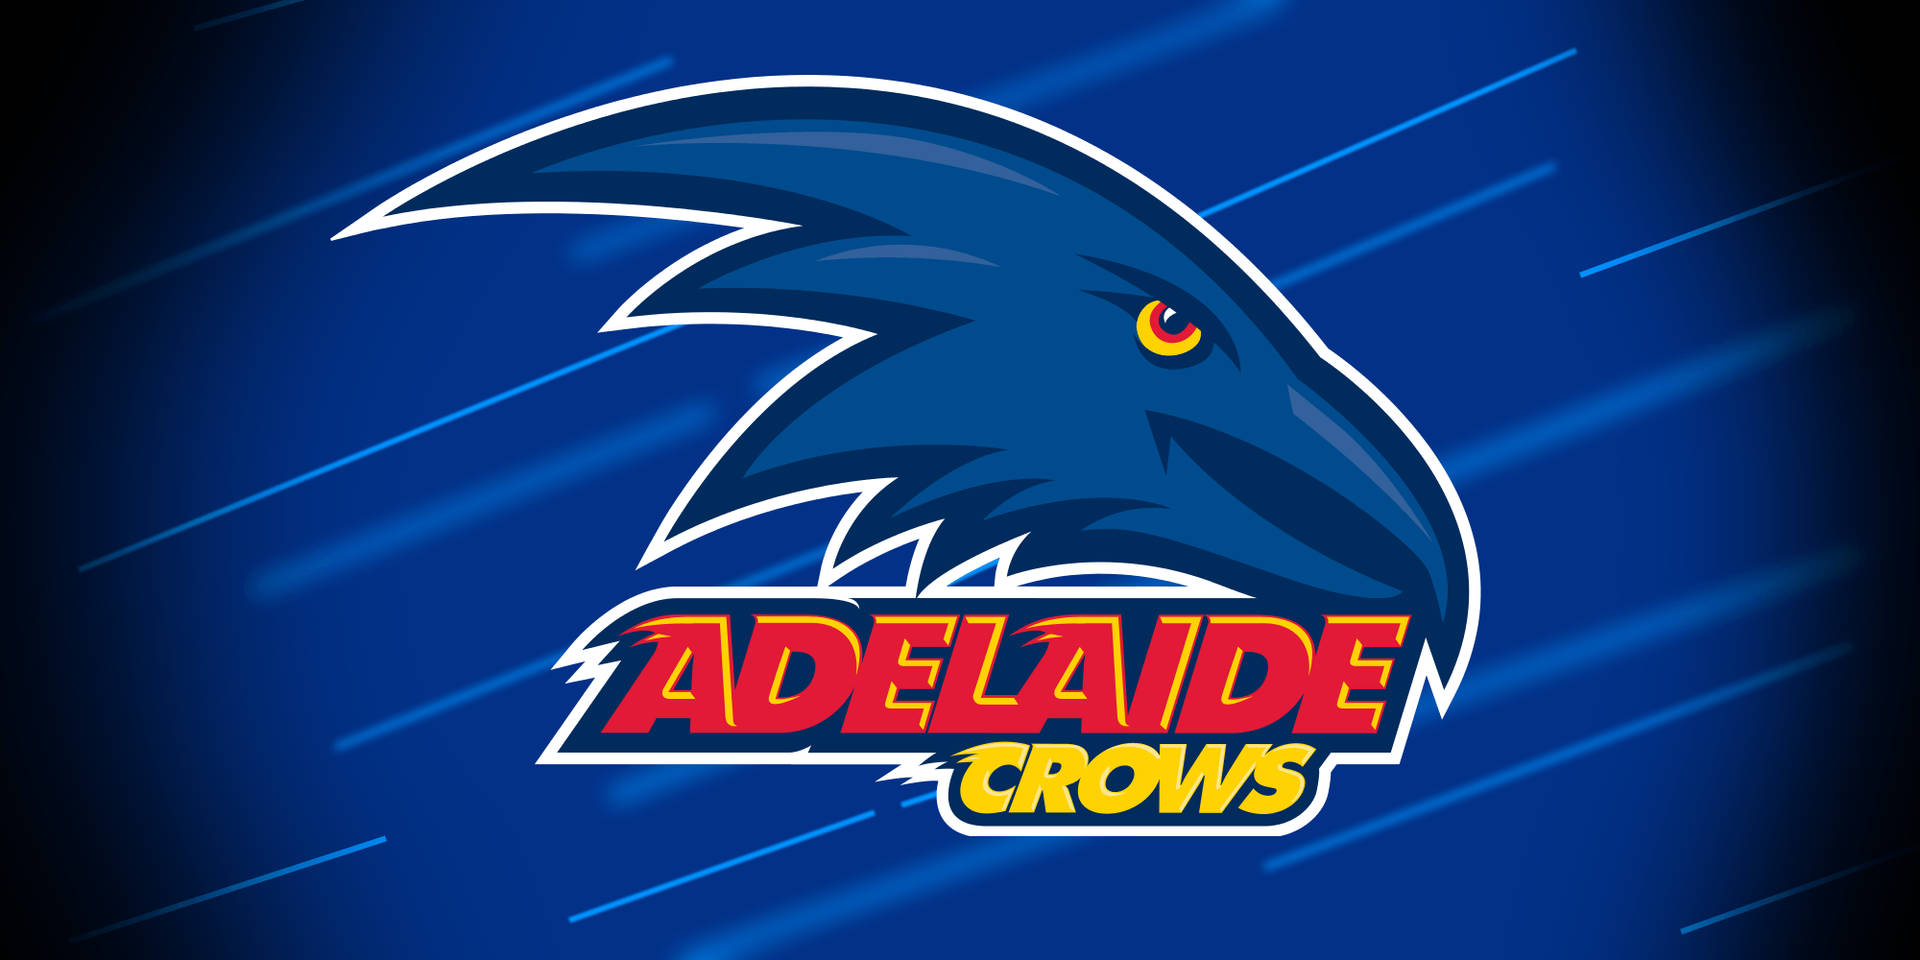 Adelaide Crows Digital Illustration Background